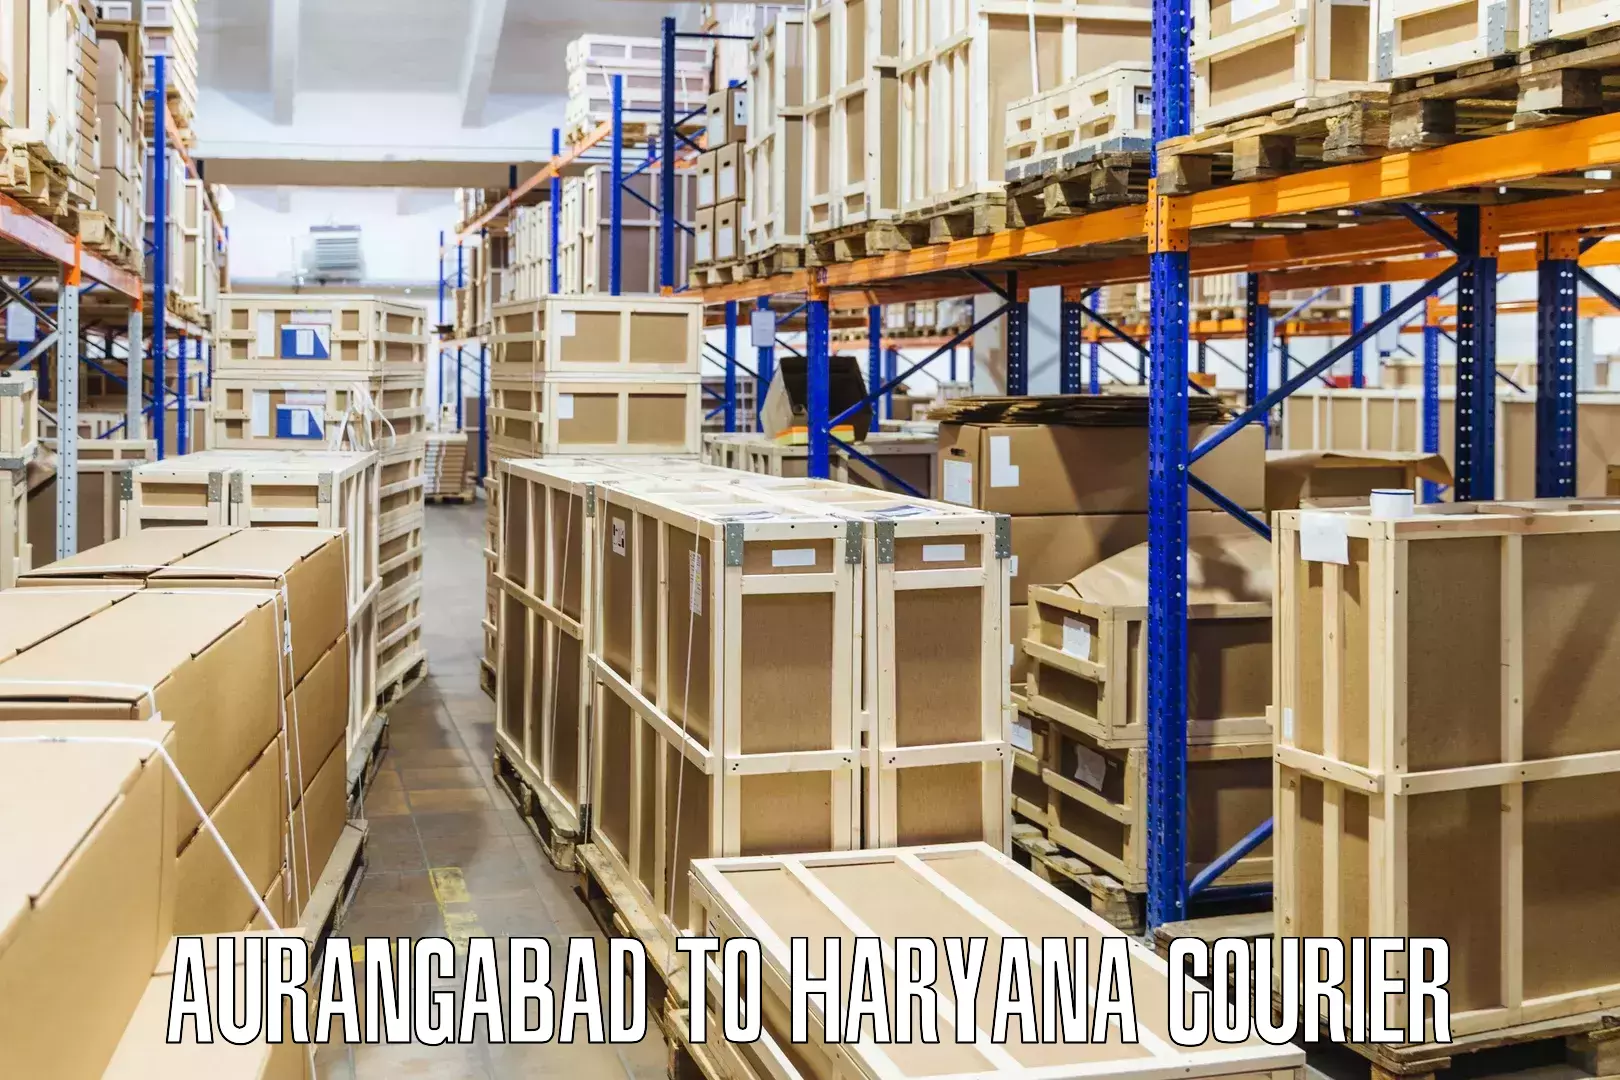 Next-day delivery options Aurangabad to Kurukshetra University